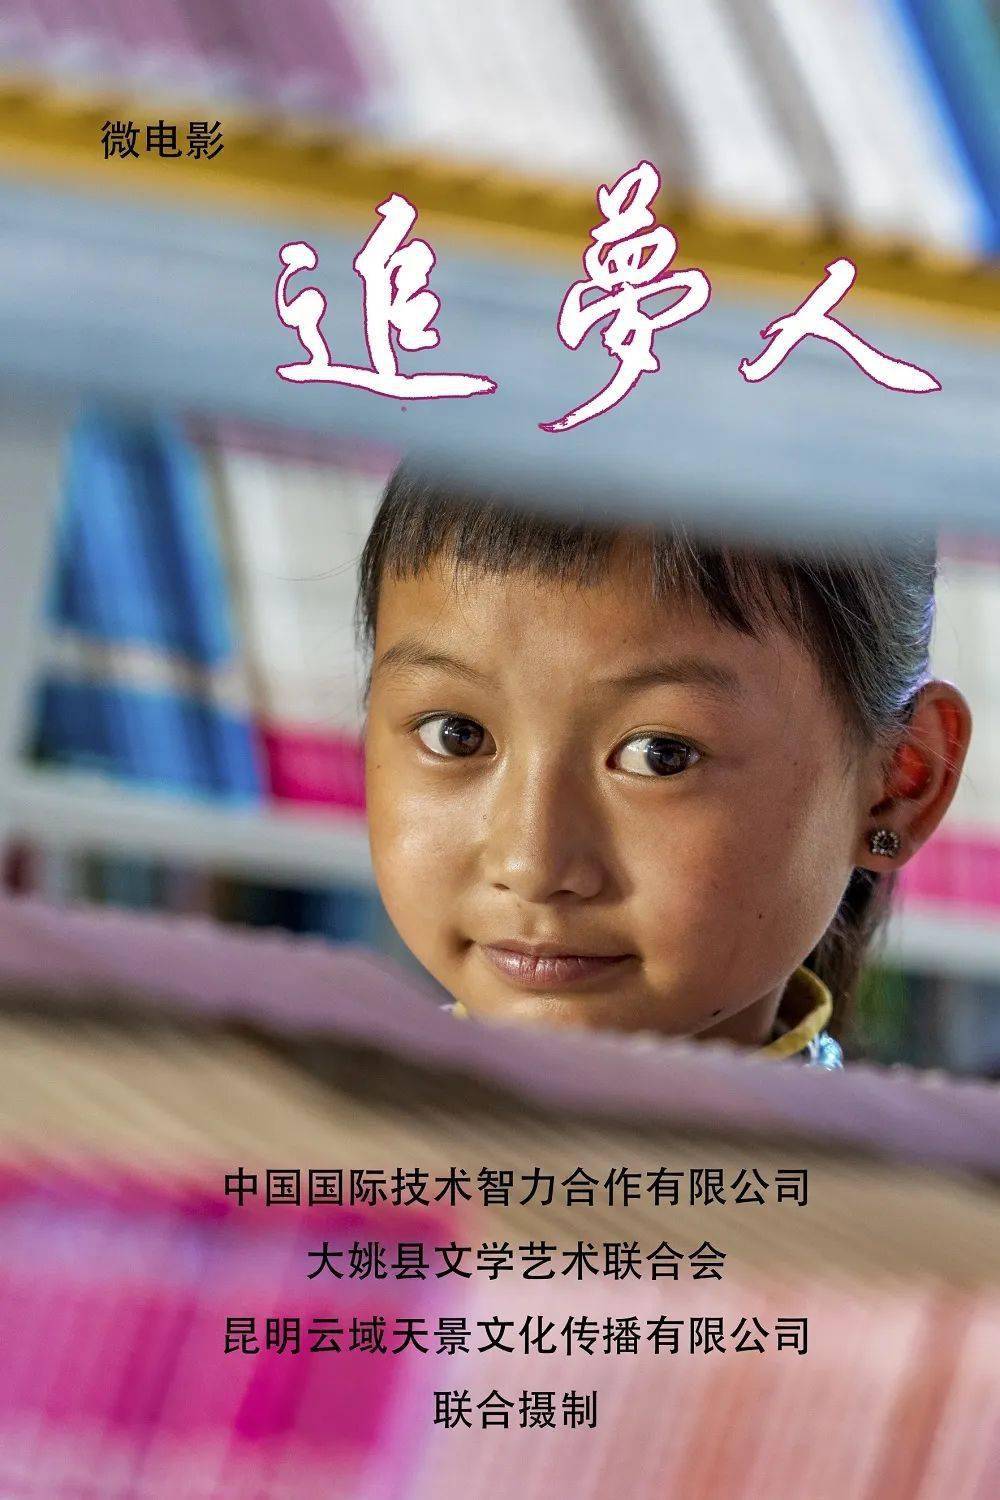 《追梦人》是一部反映中智集团帮扶云南楚雄州大姚县精准扶贫的微电影